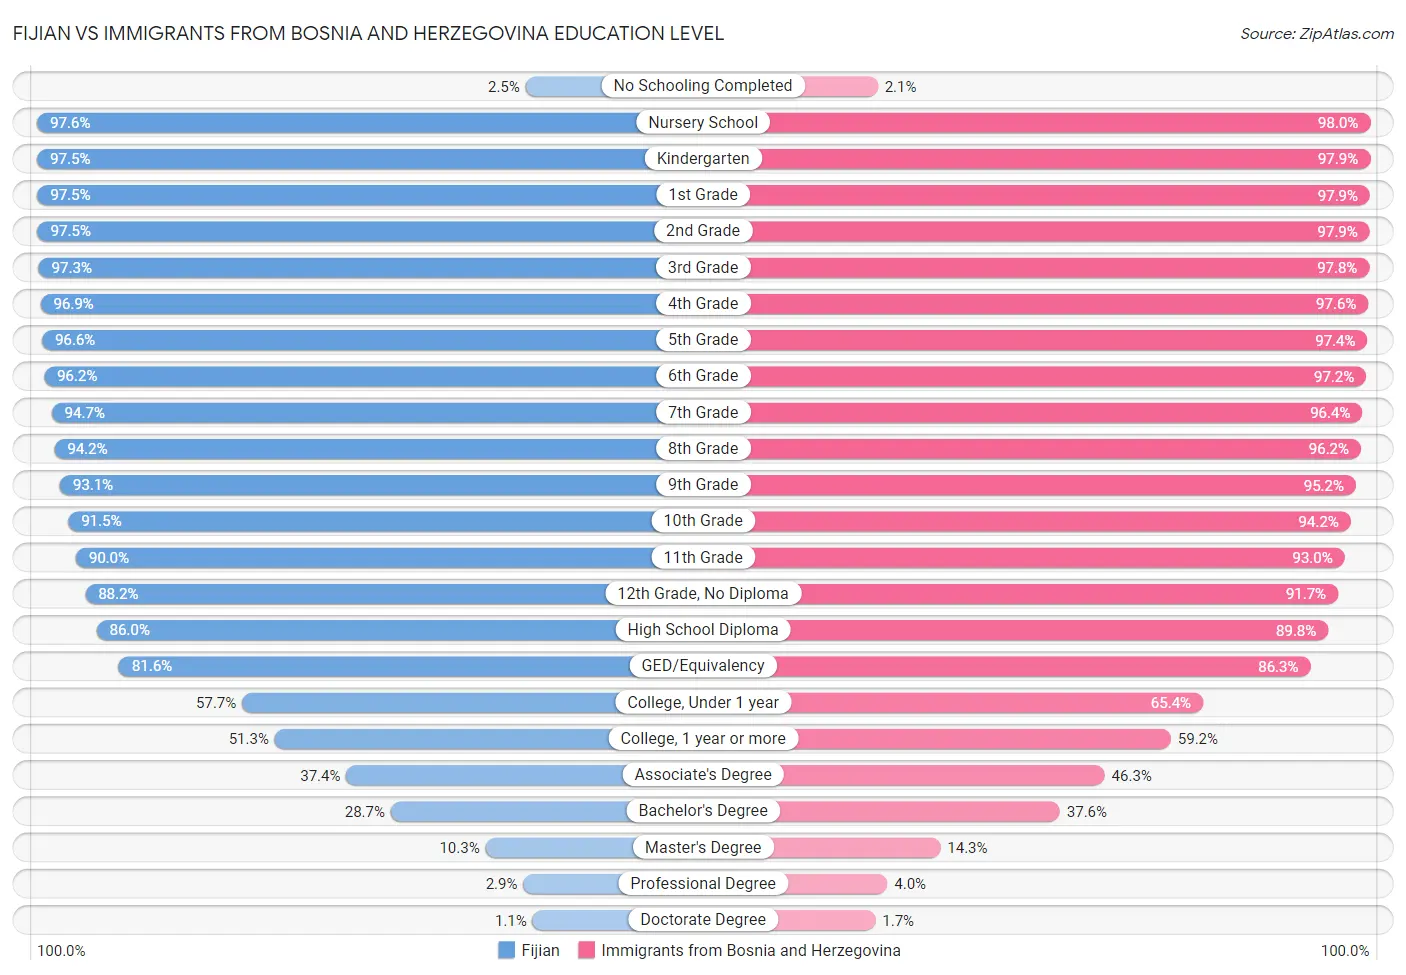 Fijian vs Immigrants from Bosnia and Herzegovina Education Level